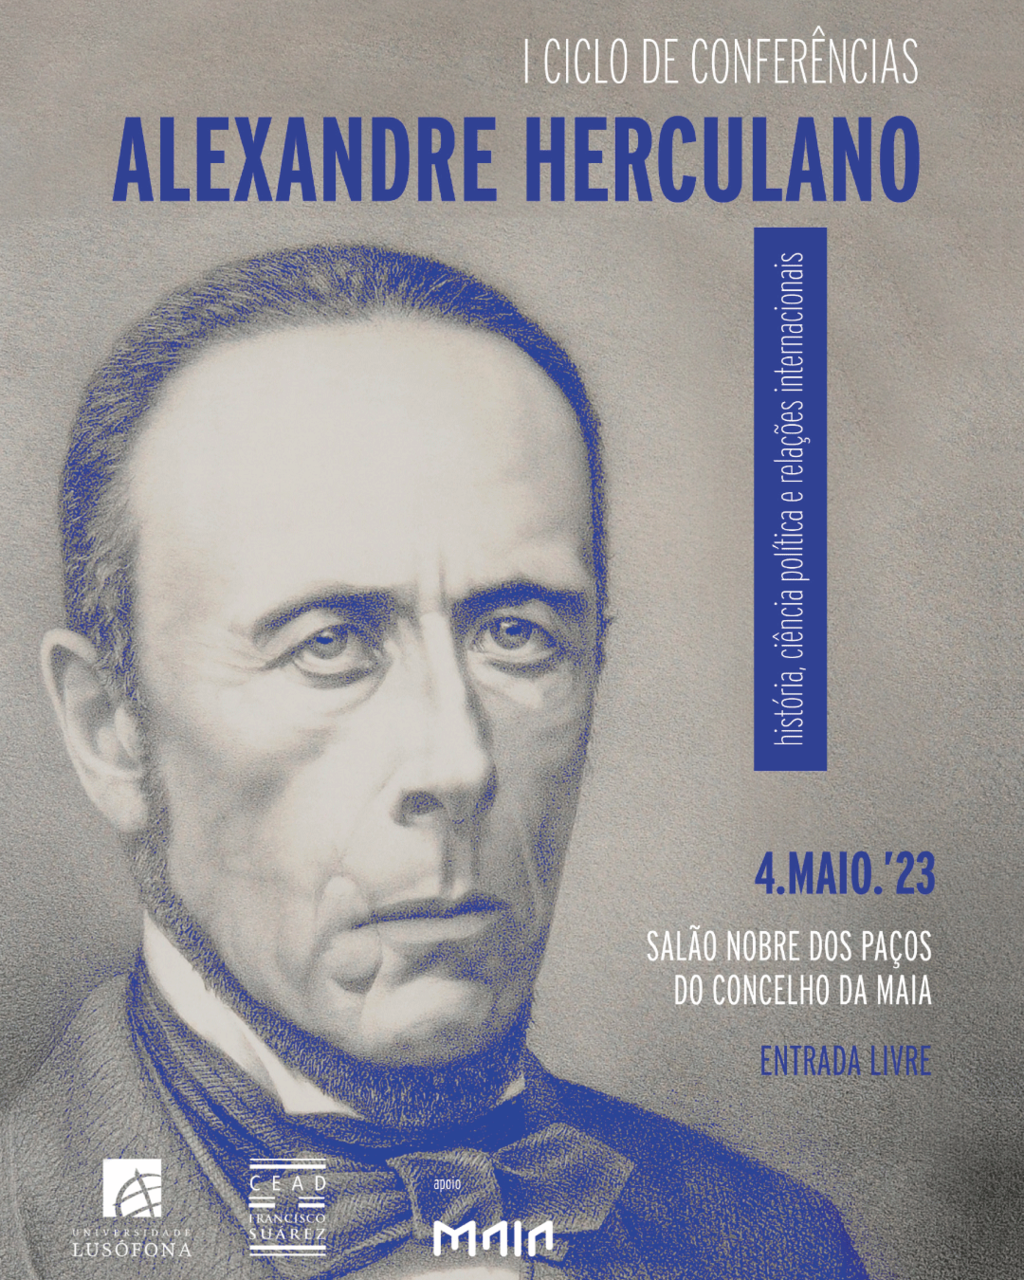 I Ciclo de Conferências “Alexandre Herculano – Encontros da Maia”